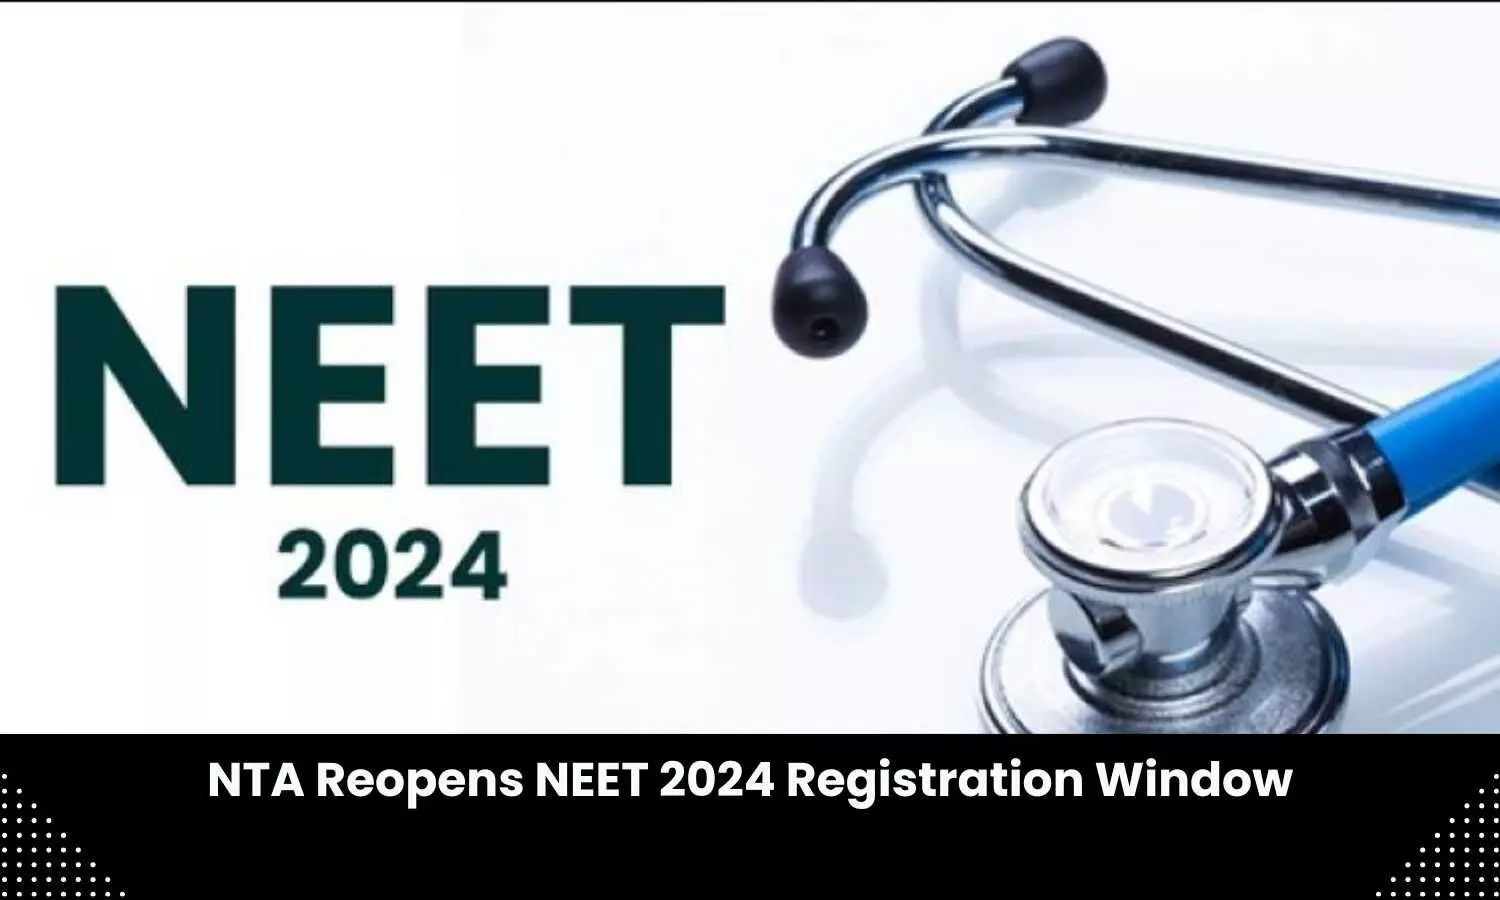 NEET 2024 registration window reopens